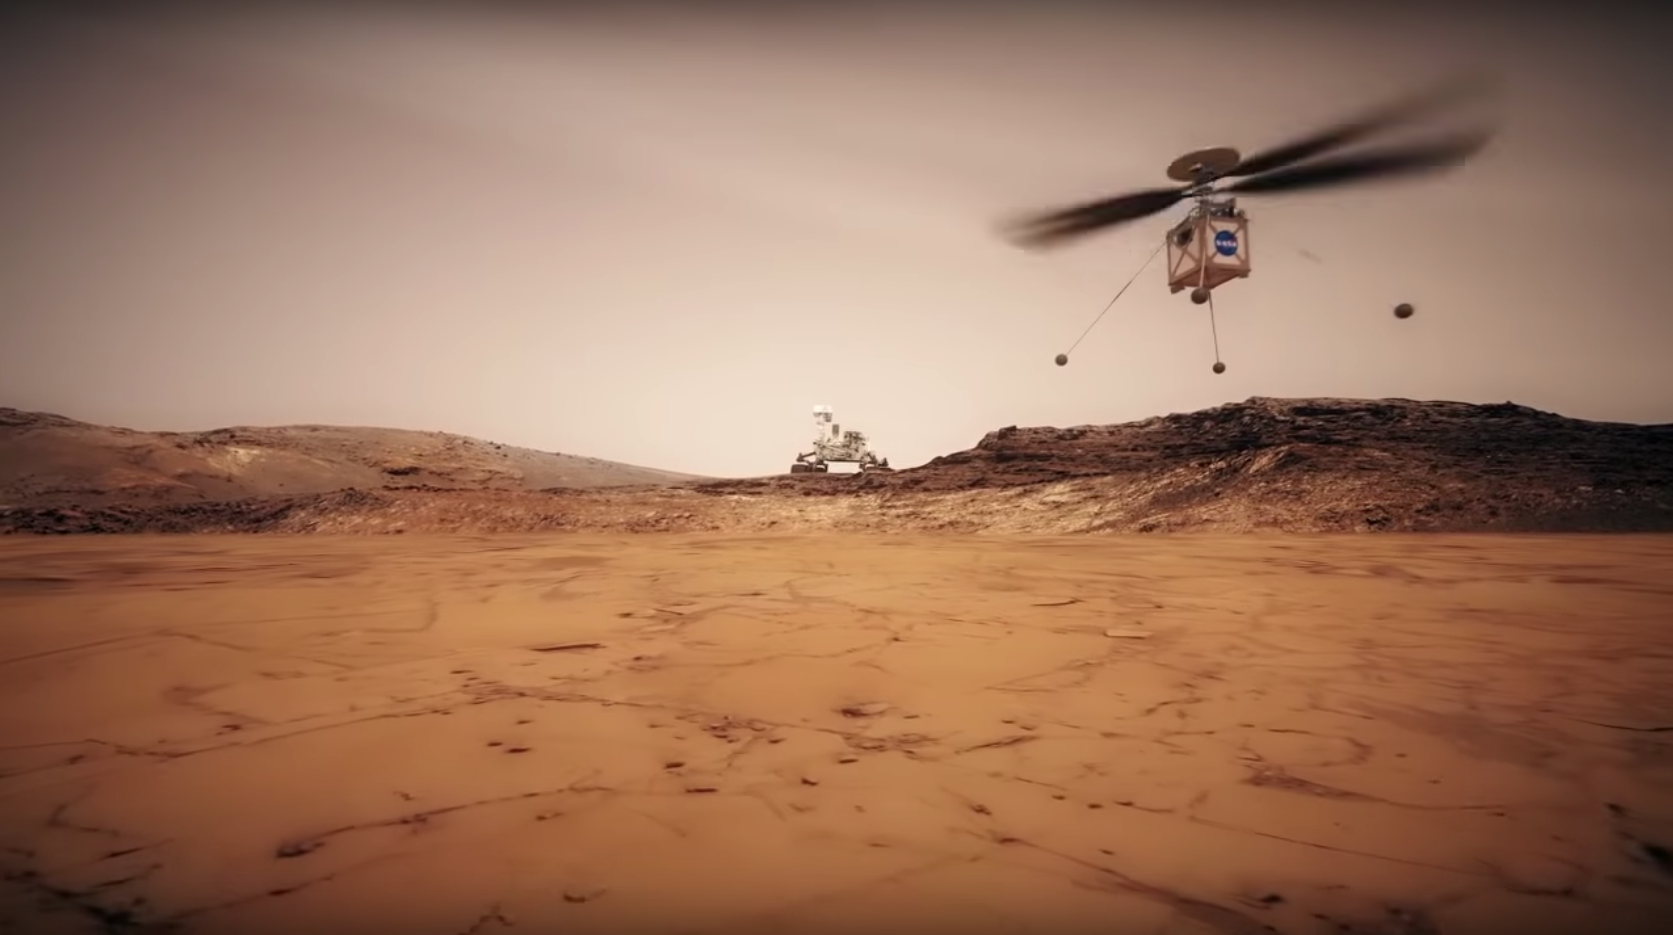 A NASA következő marsjárója egy helikoptert is visz magával a vörös bolygóra. Forrás: NASA/JPL-Caltech